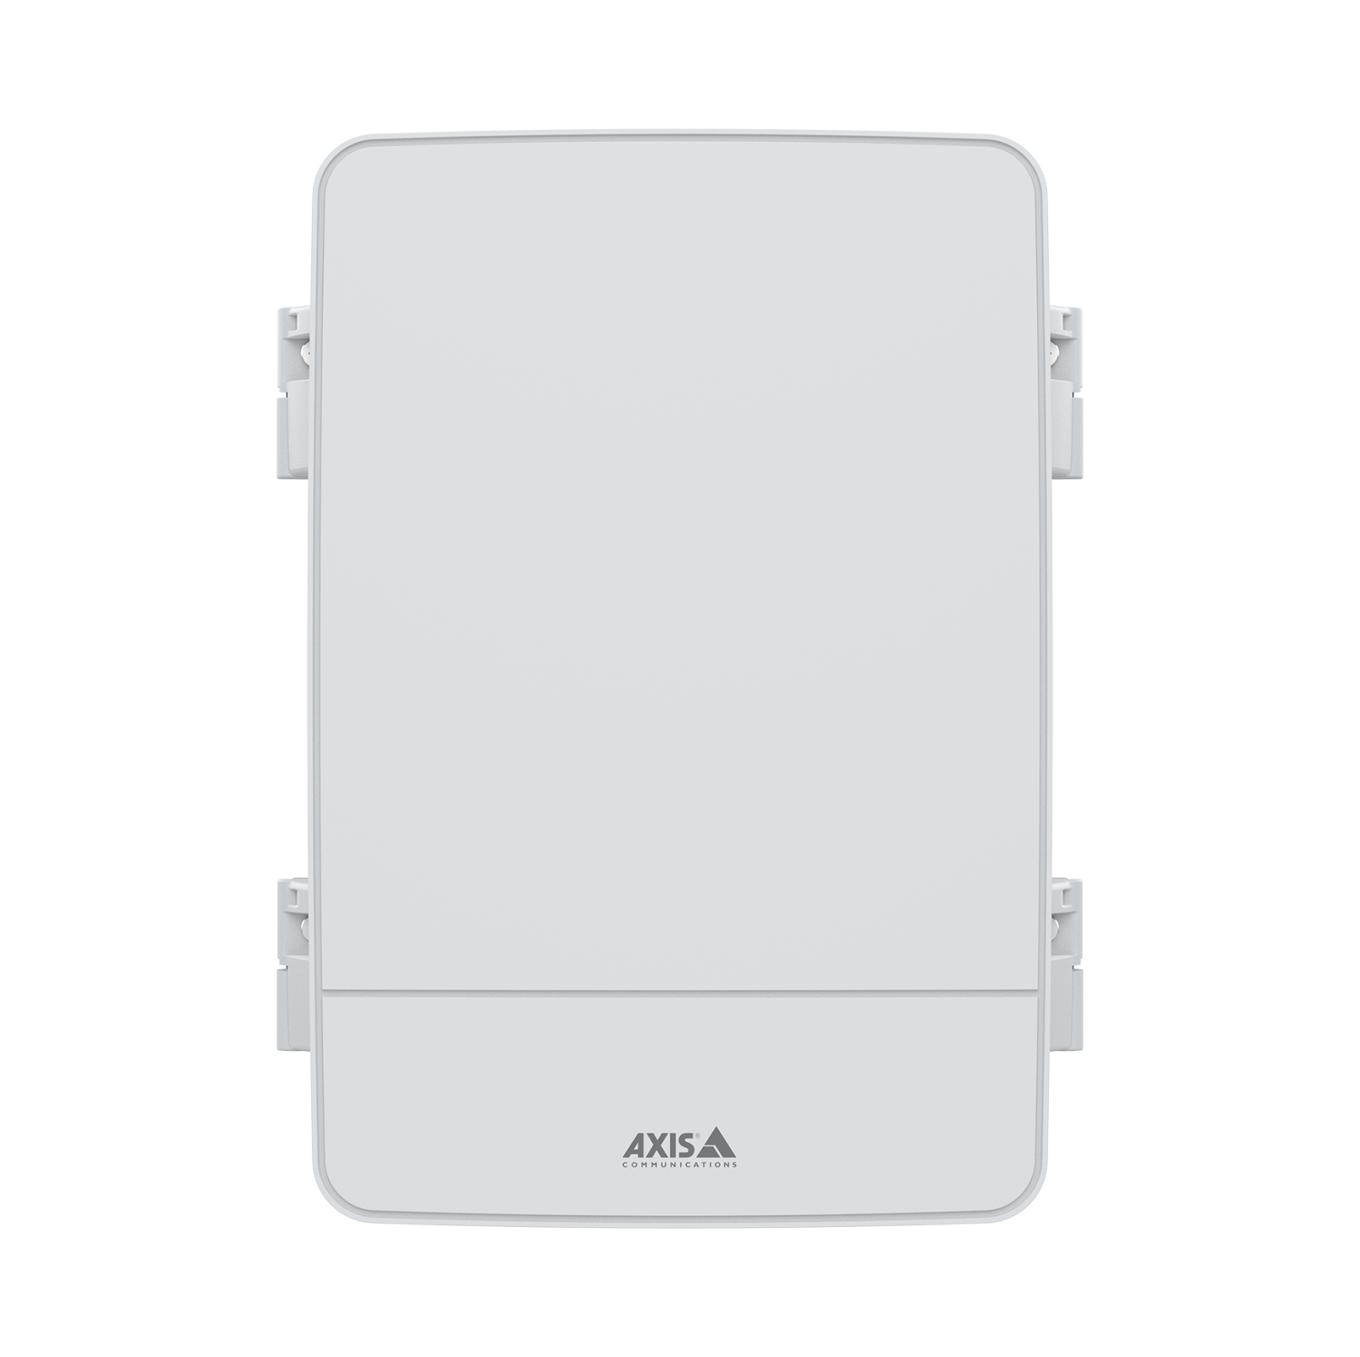 AXIS A12 Network Door Controllerシリーズ: AXIS A1214 Network Door Controller Kit